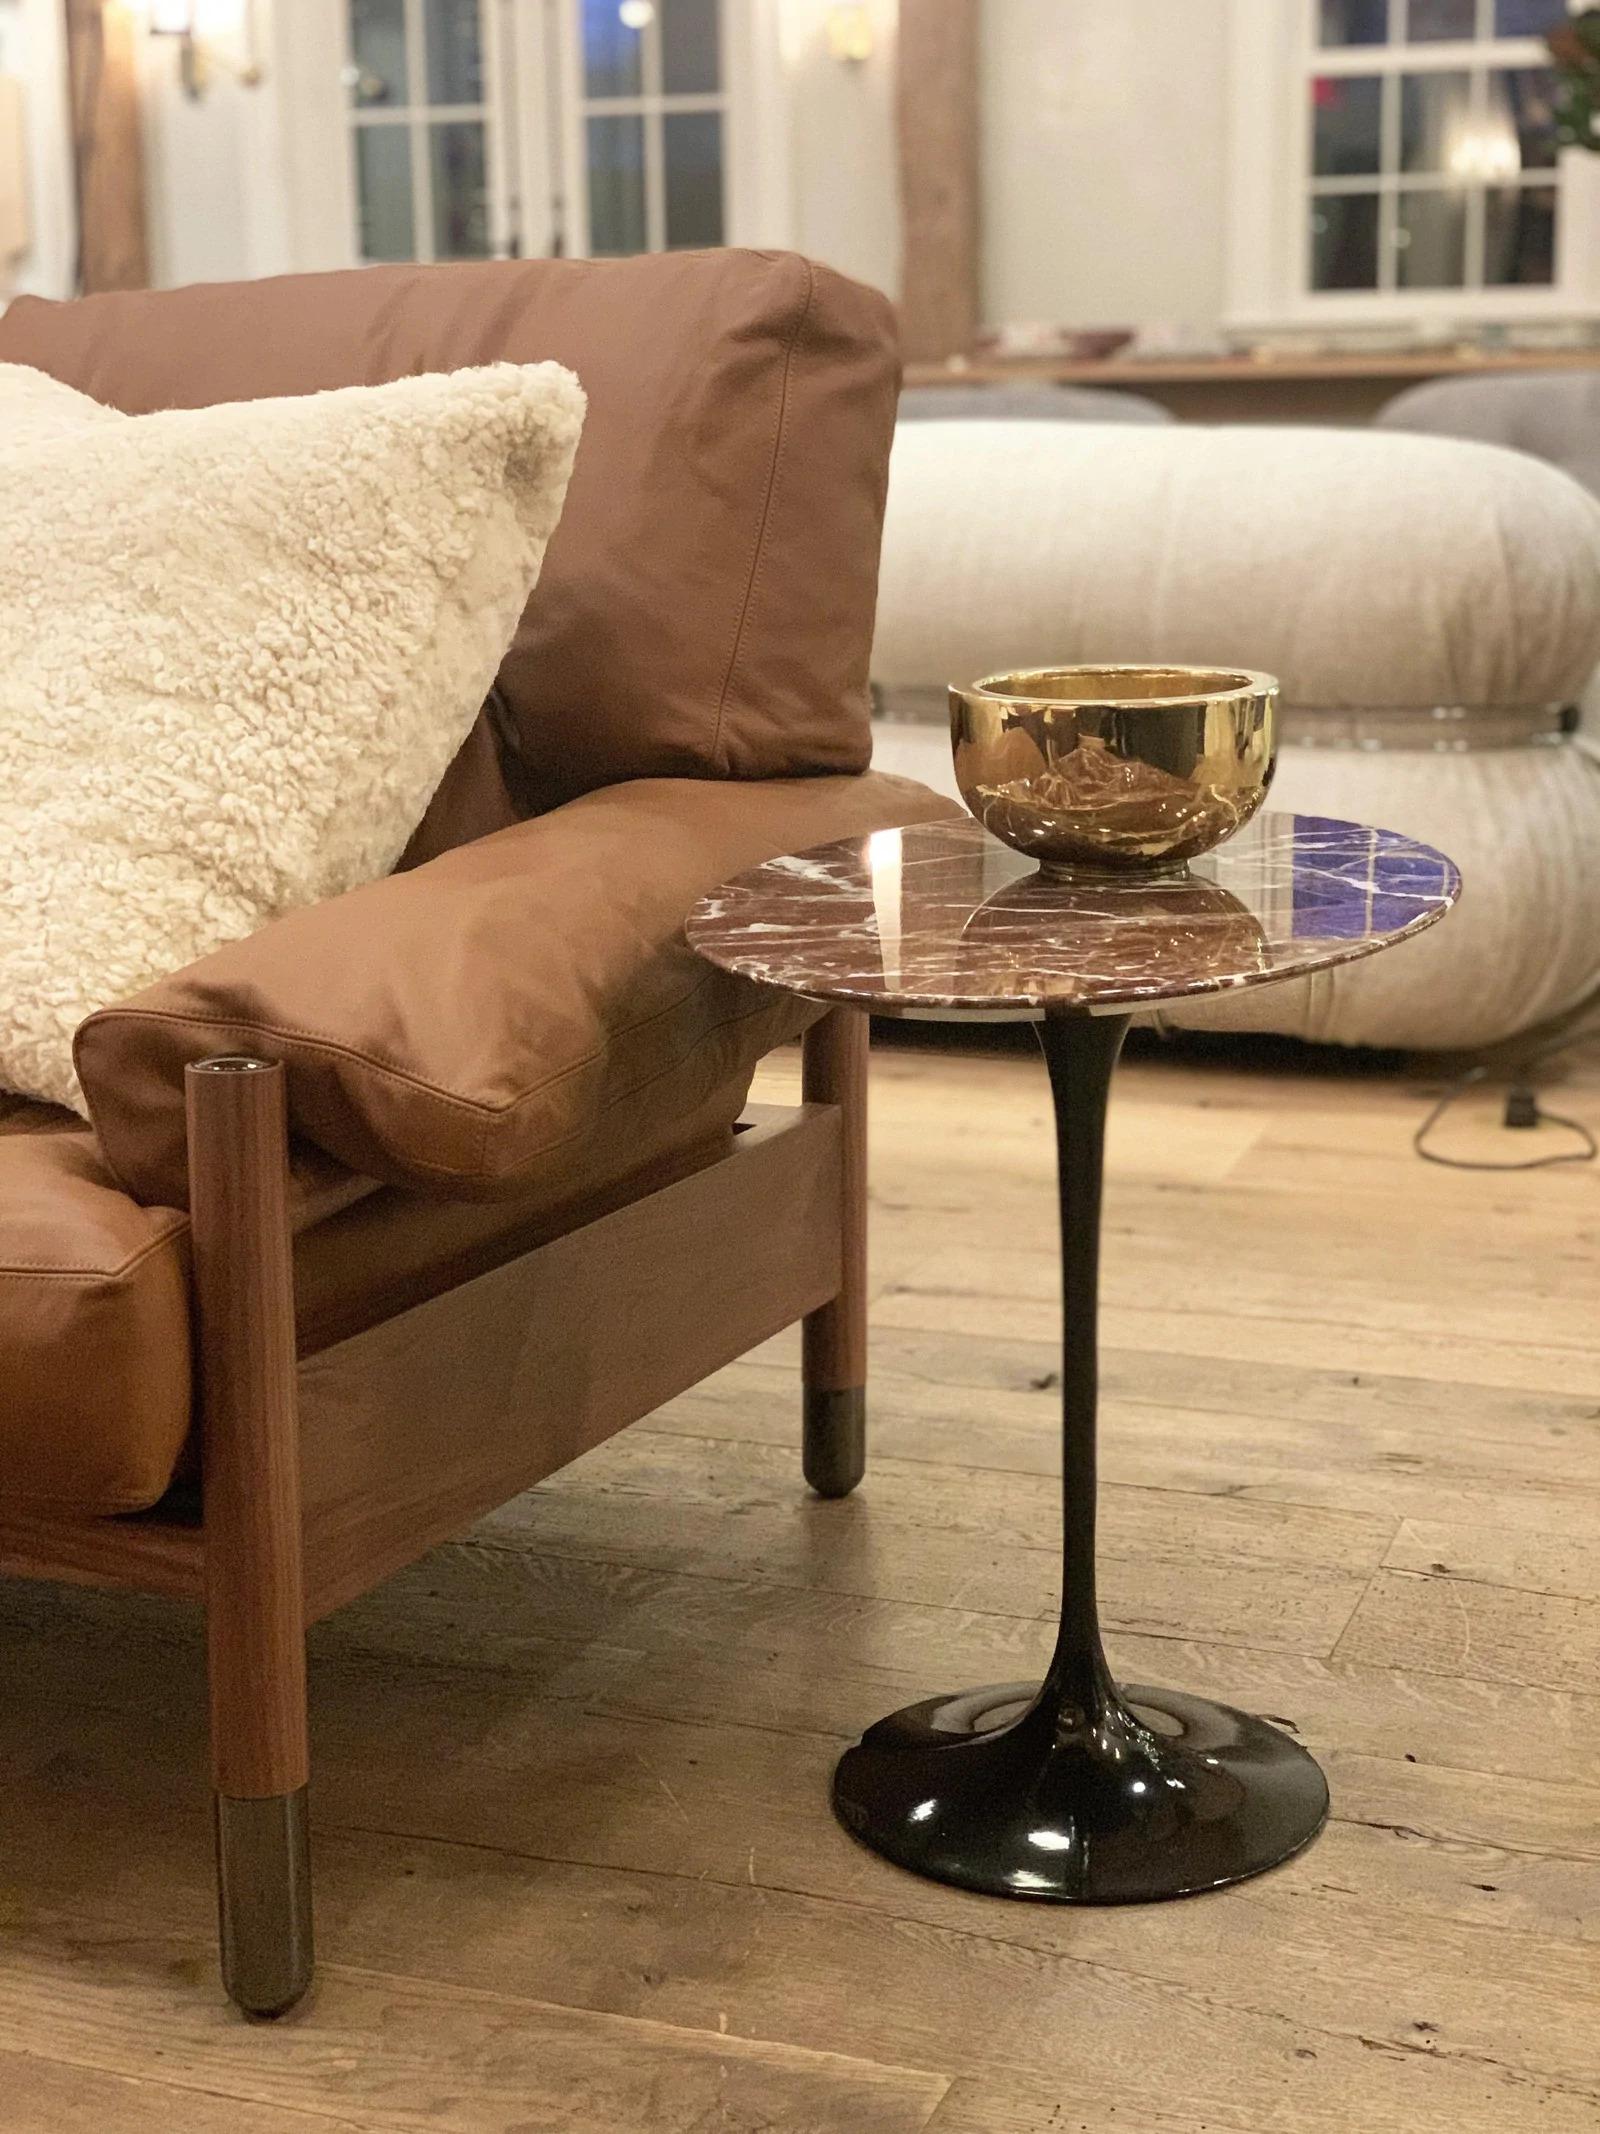 Le nom Knoll est depuis longtemps synonyme de collections de meubles modernes révolutionnaires et de collaborations avec certains des architectes et designers les plus célèbres au monde, notamment les créations emblématiques d'Eero Saarinen, Marcel